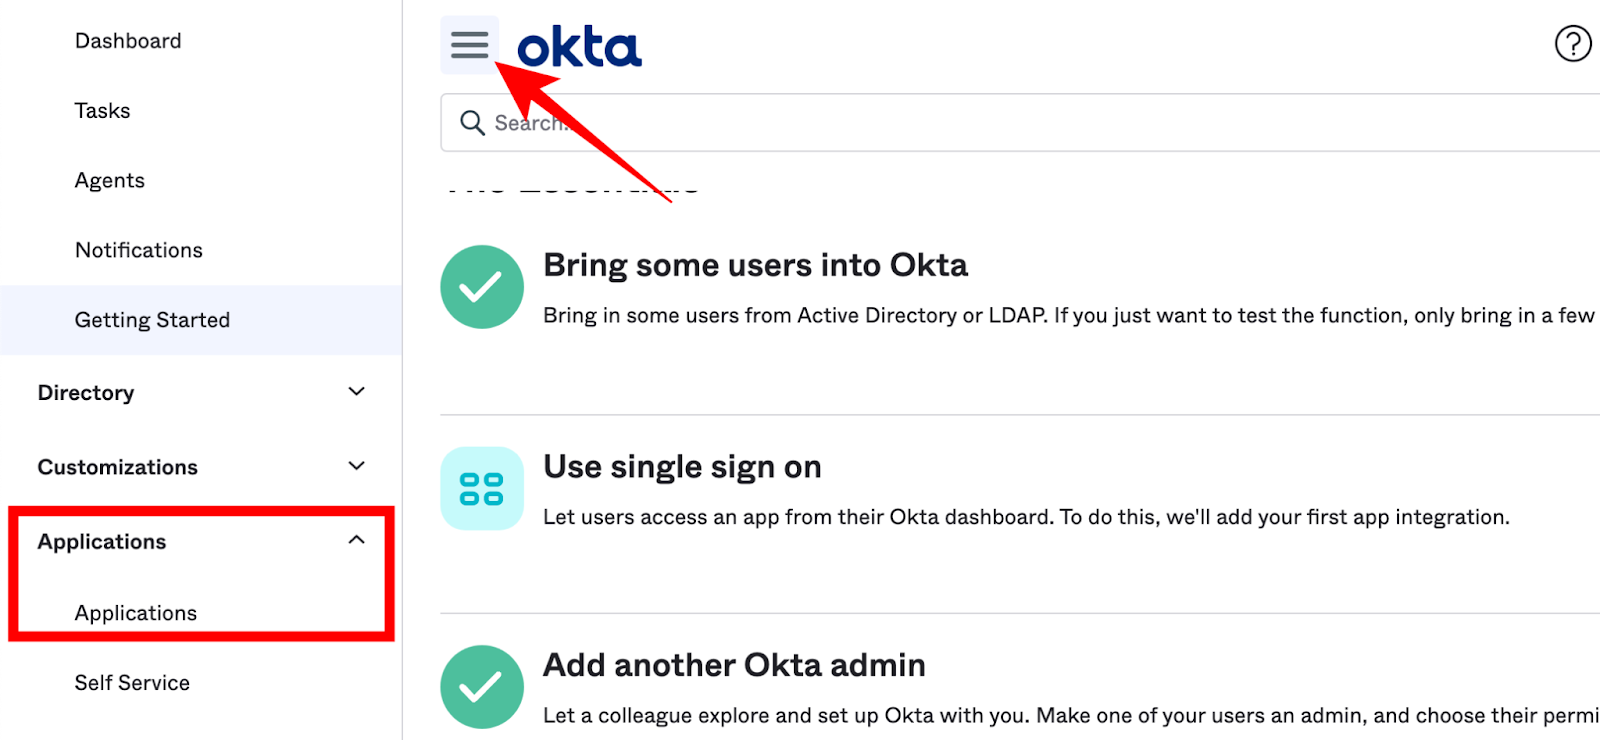 L'élément "Applications" dans le menu de gauche est mis en évidence et une flèche pointe vers l'élément de menu hamburger à côté du logo "okta".